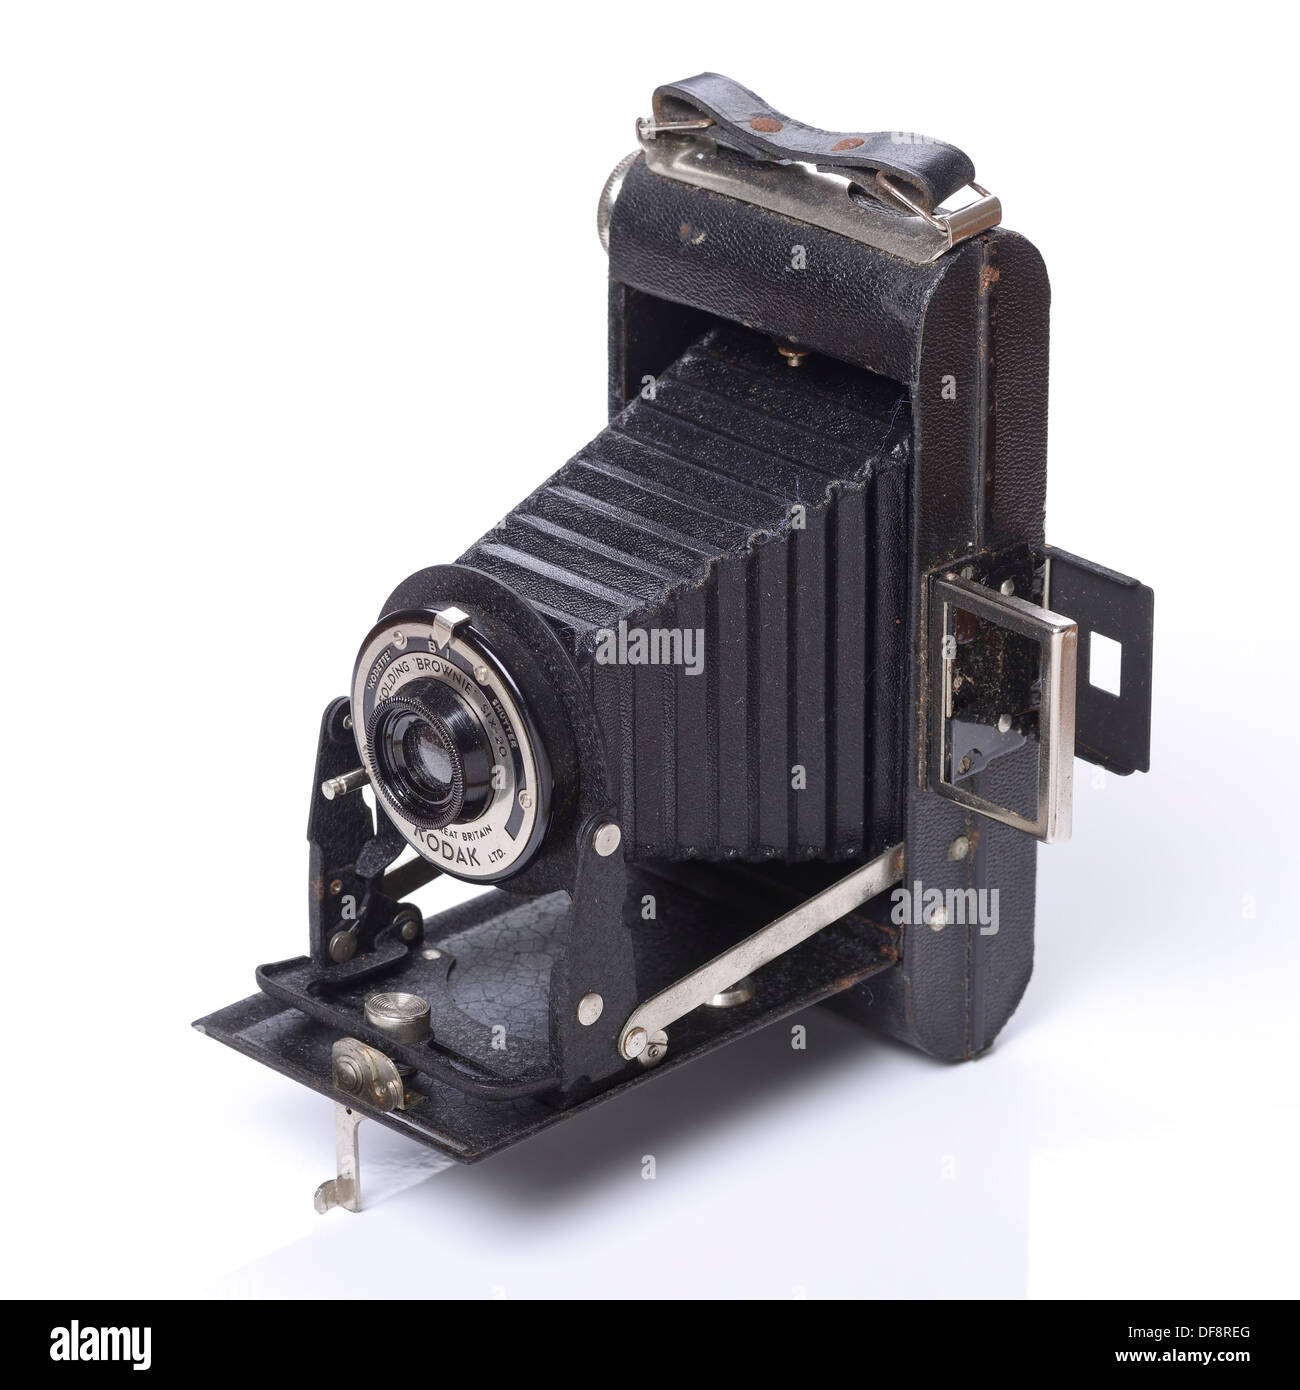 Raro Eastman Kodak No.6B 6 compacto de metal sólido ampliable Plegable Trípode de cámara 